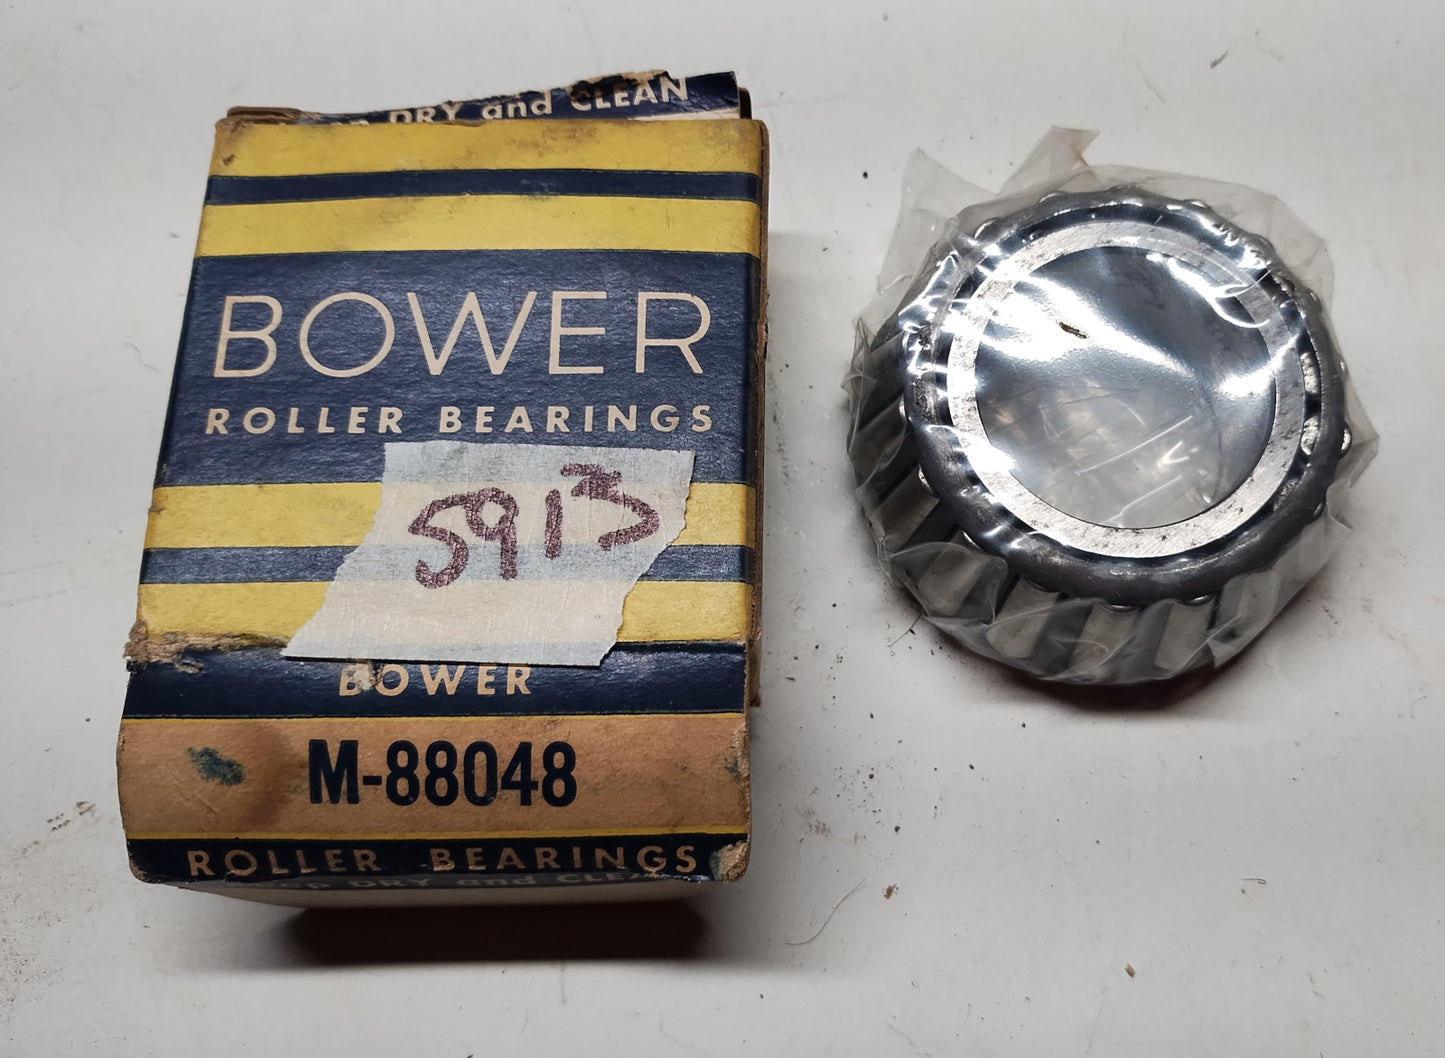 Bower roller bearing M-88048